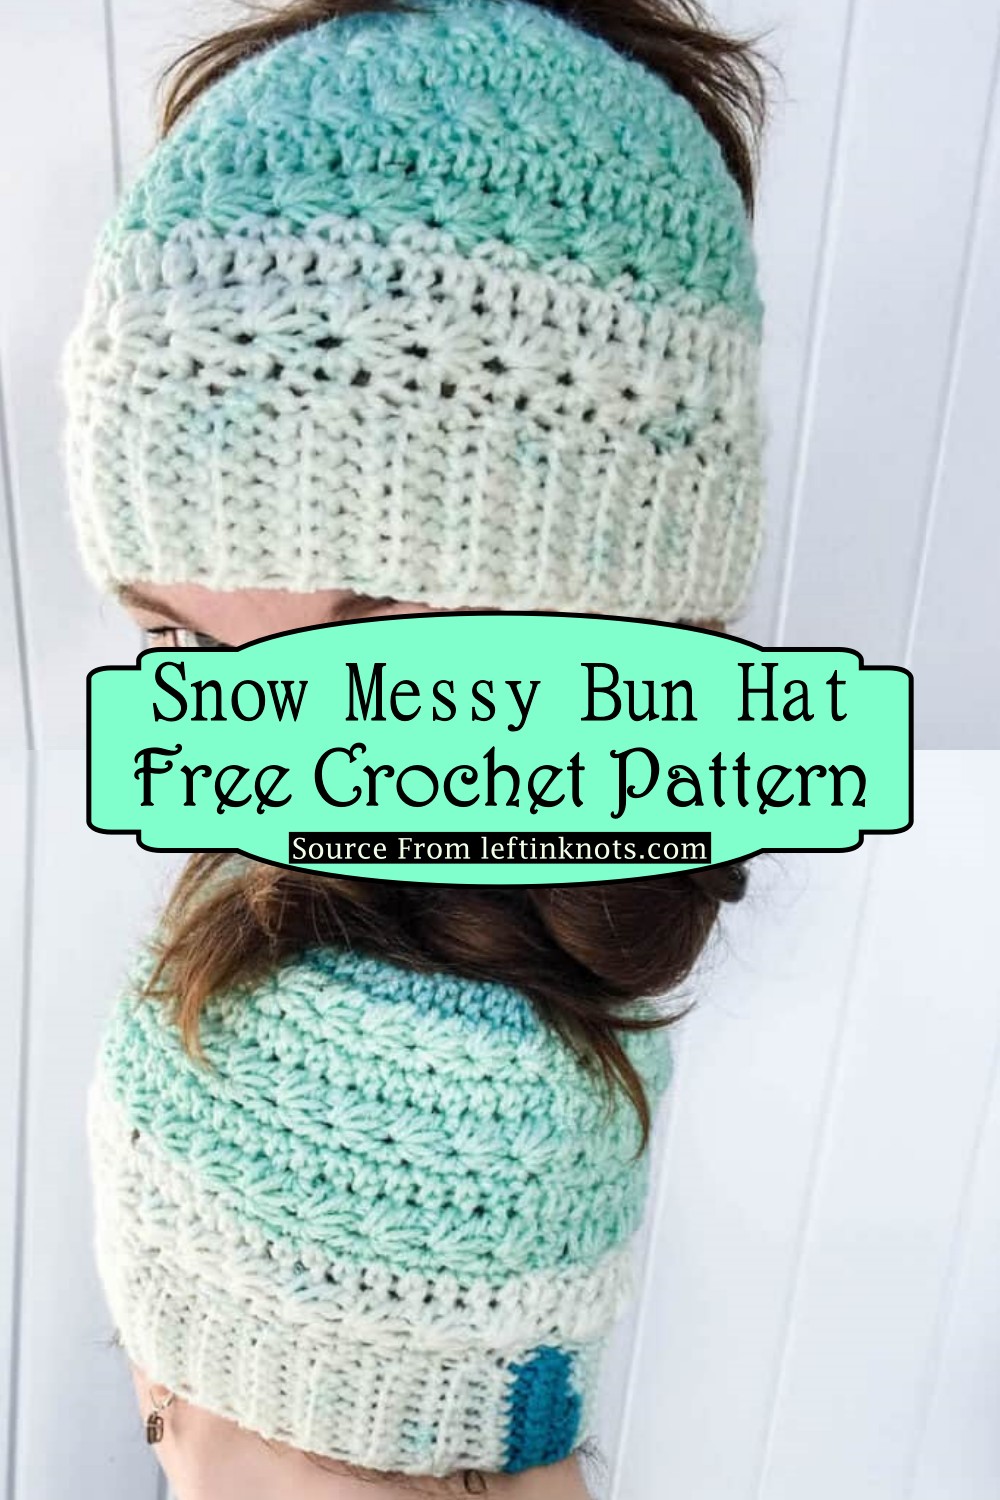 Snow Messy Bun Hat